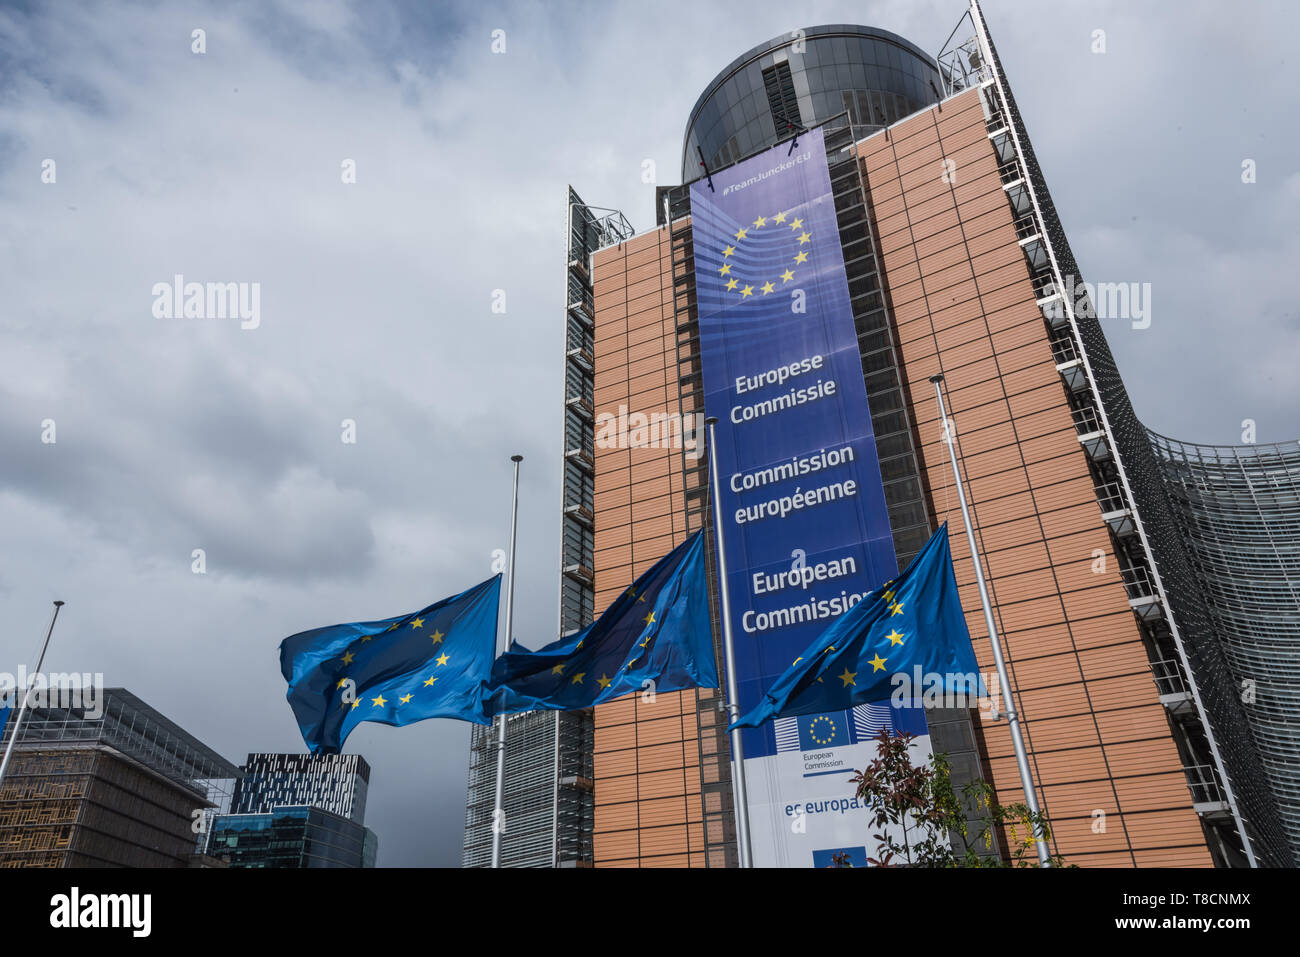 Brüssel, Europaviertel, Europäische Kommission, Berlaymont-Gebäude Das 1963 bis 1967 erbaute Berlaymont-Gebäude en Brüssel ist der Sitz der Europäisch Foto de stock